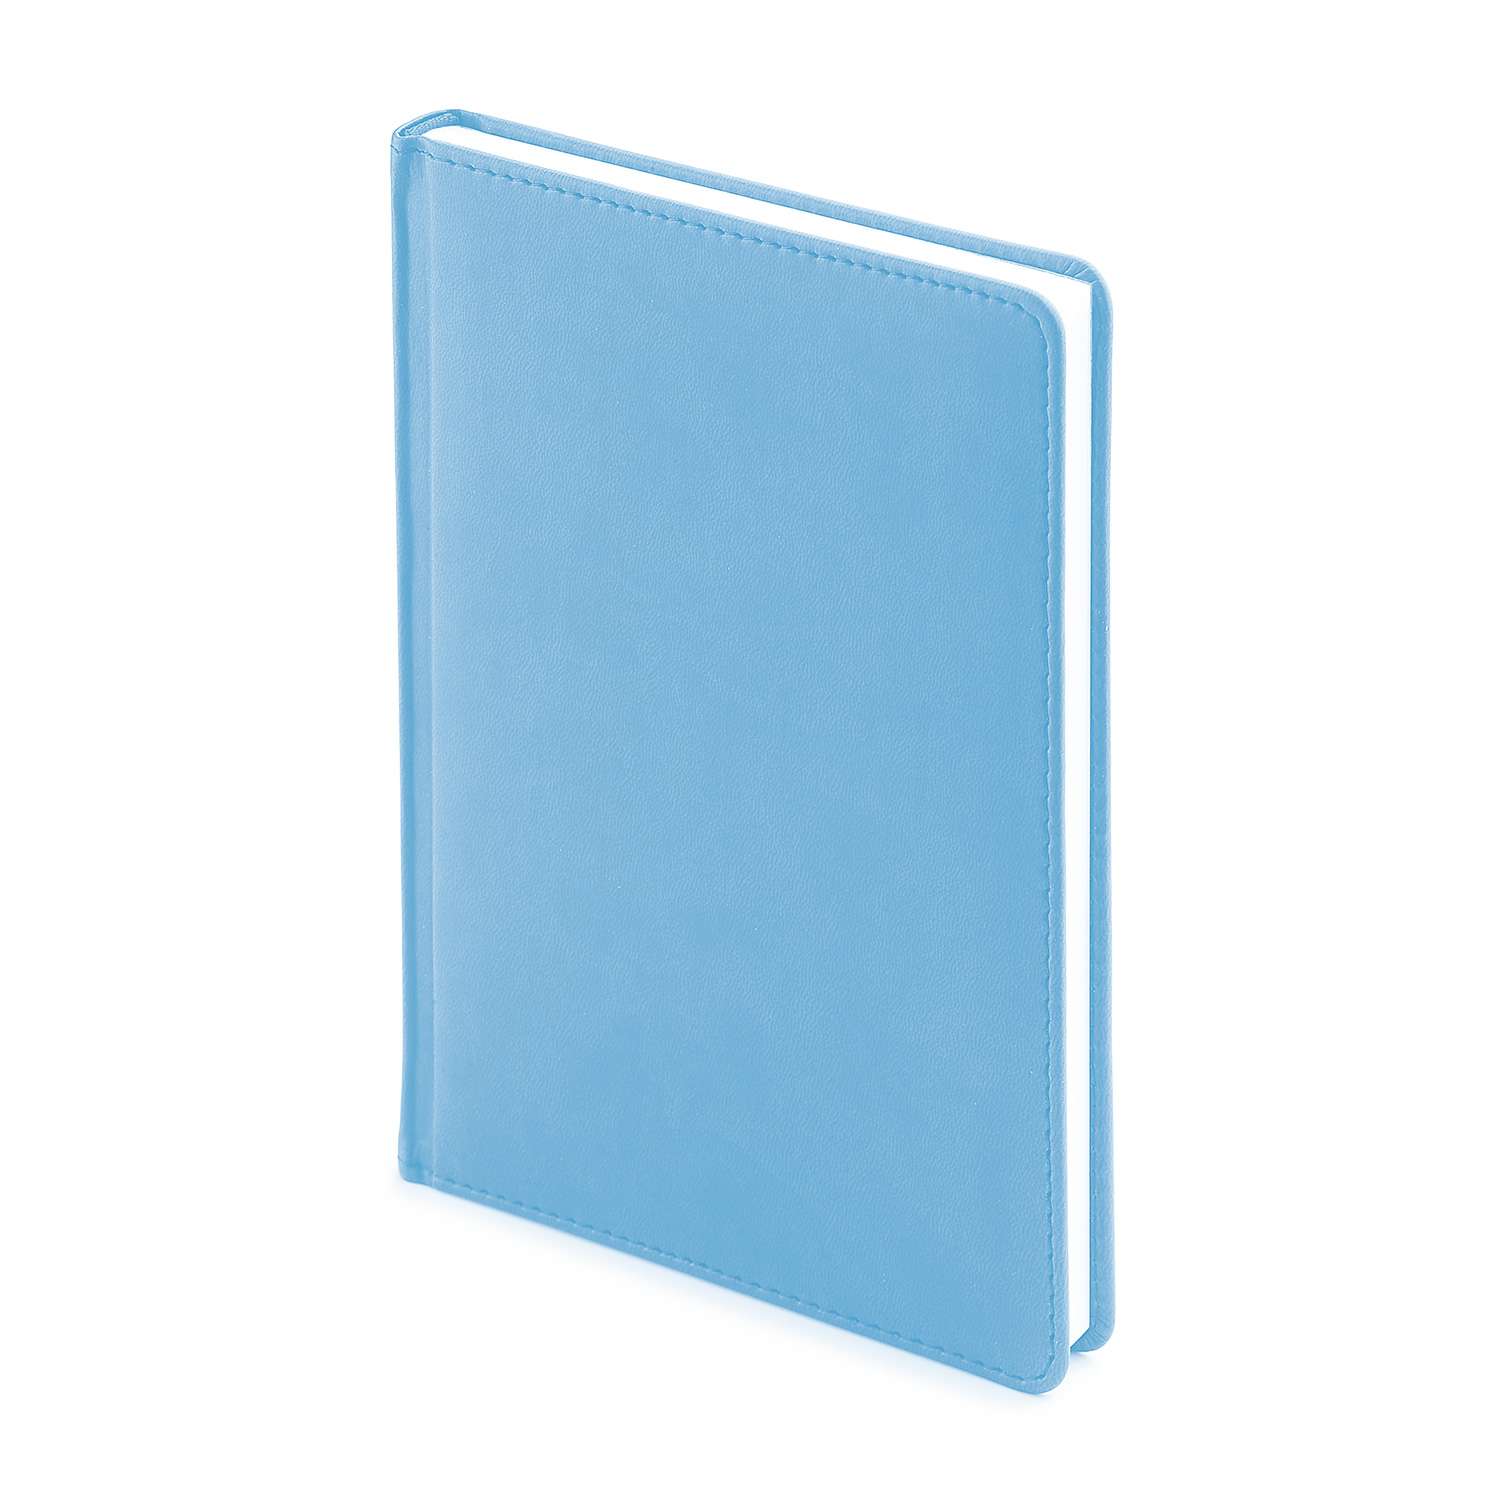 Набор подарочный Альт Velvet небесно-голубой А5 145х205 мм ежедневник и ручка - фото 2